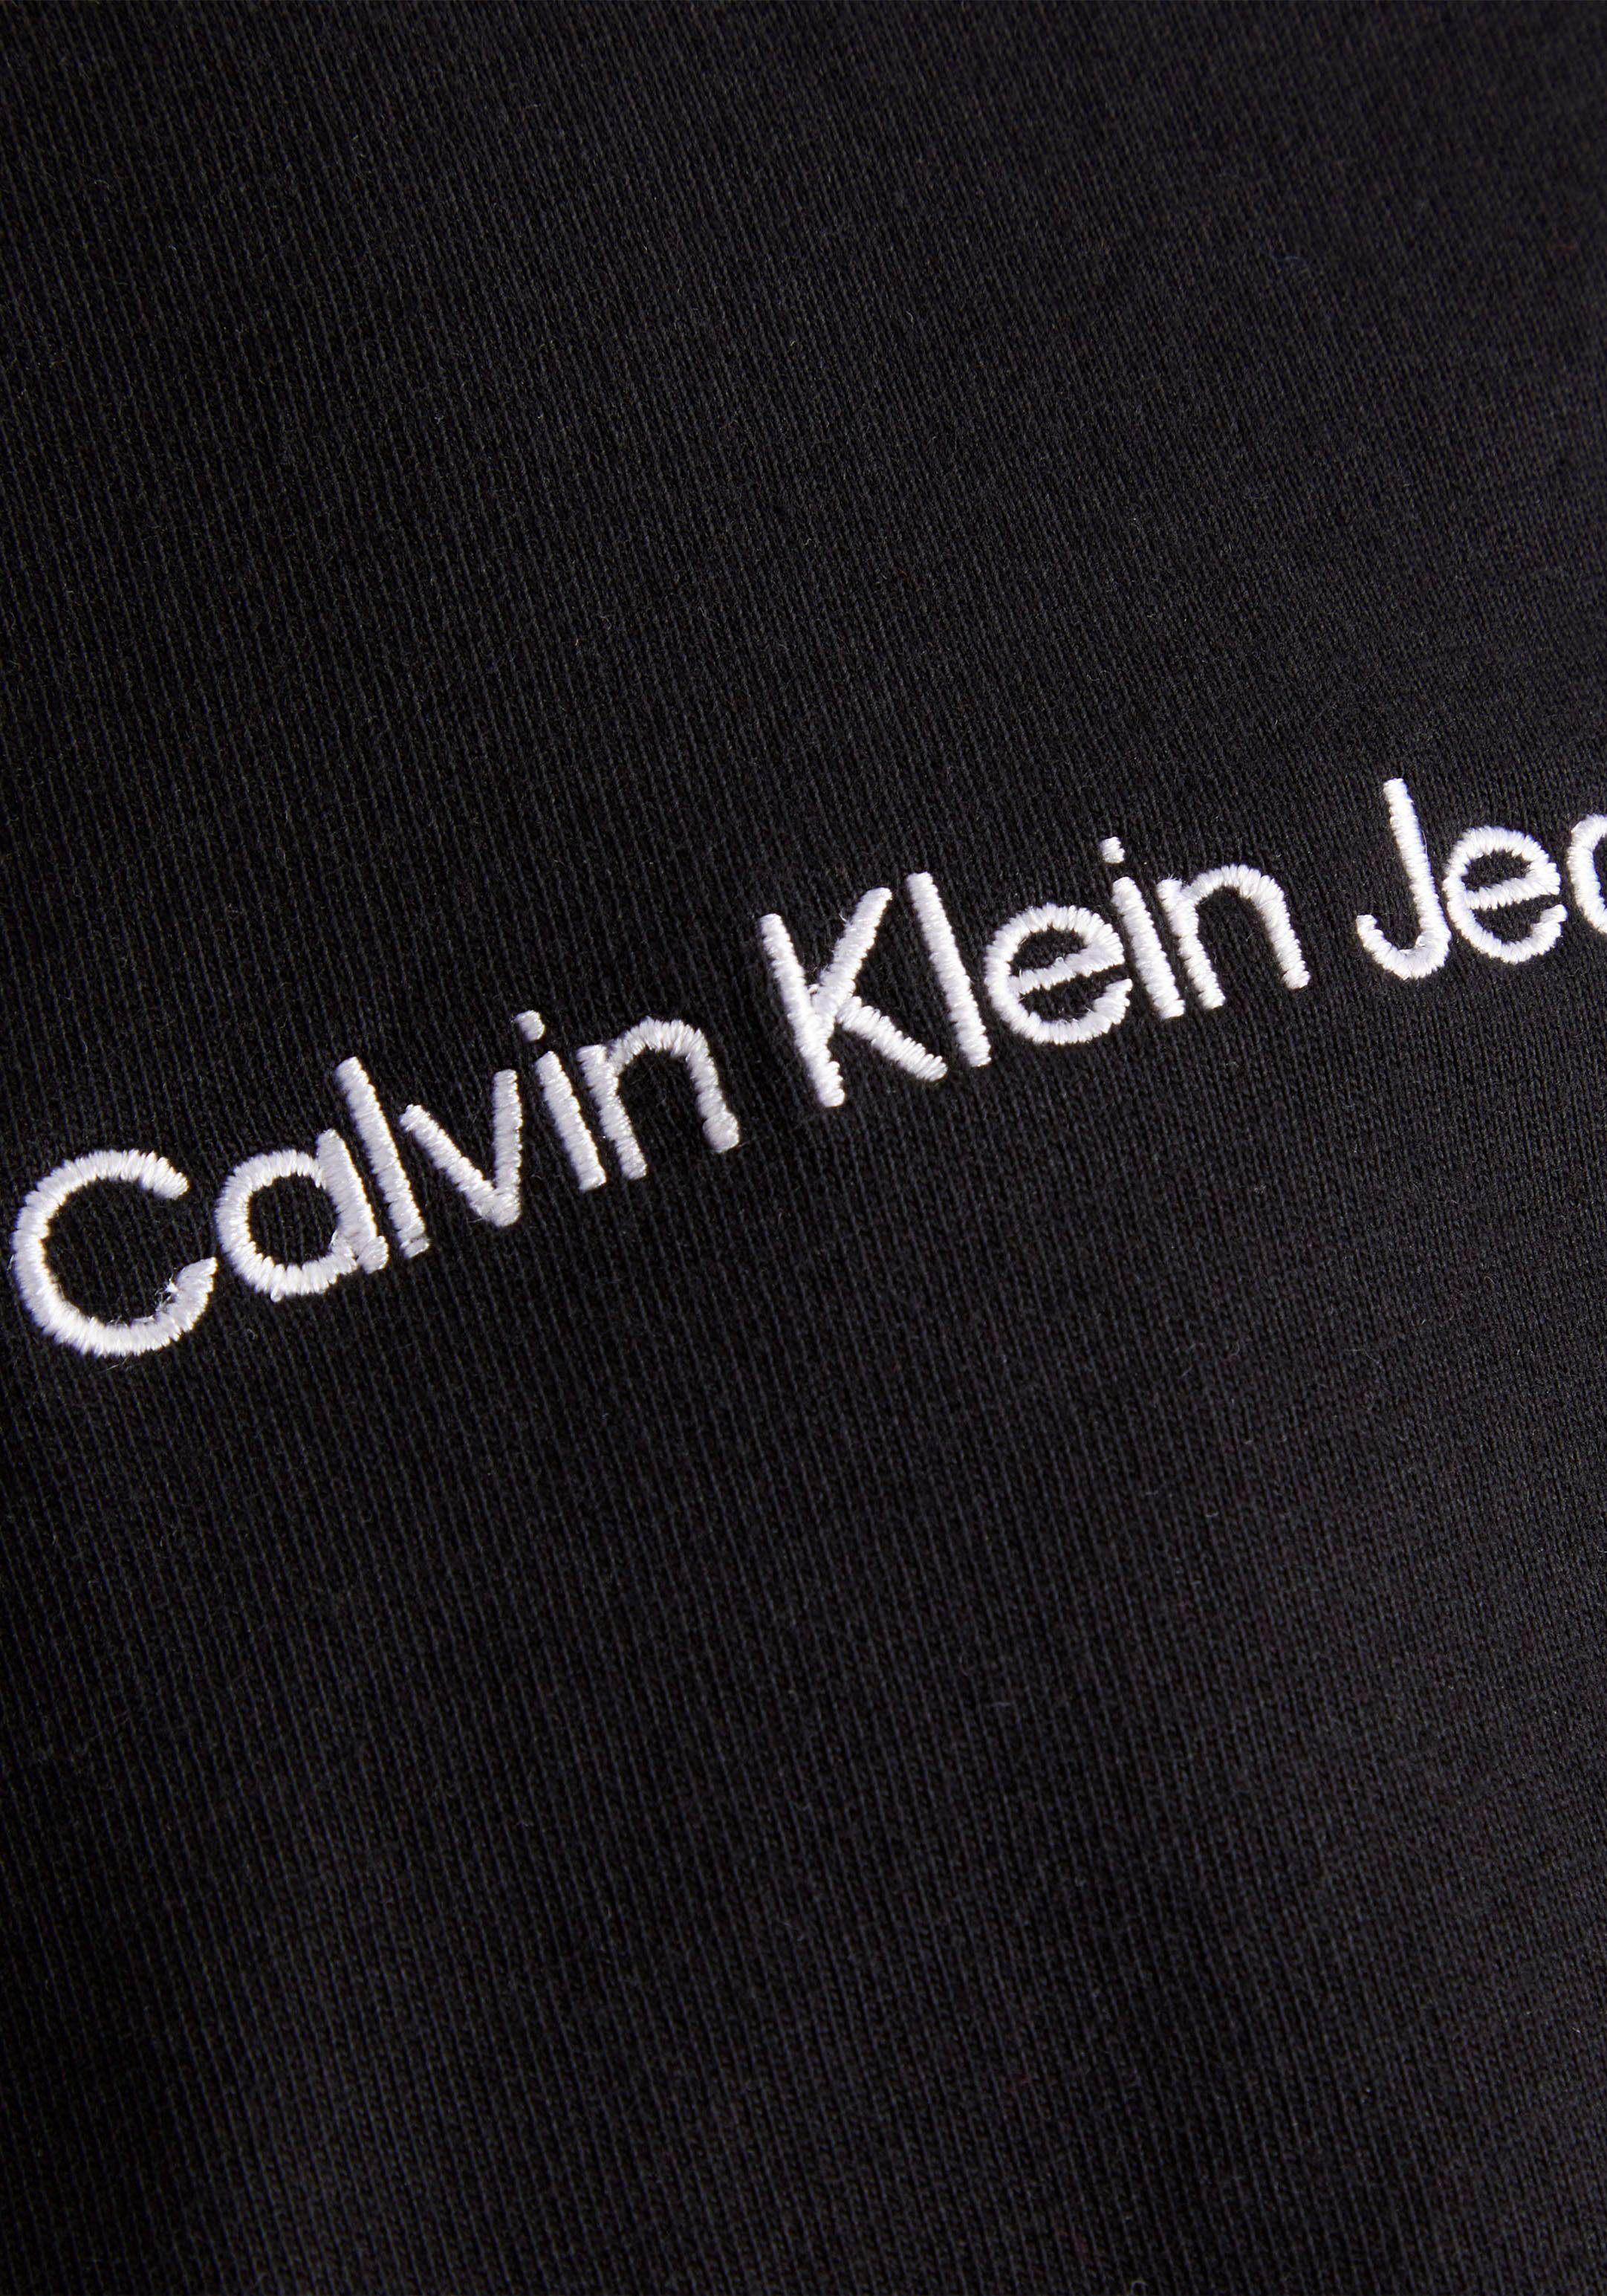 schwarz T-Shirt Plus Klein Rundhalsausschnitt Calvin mit Jeans